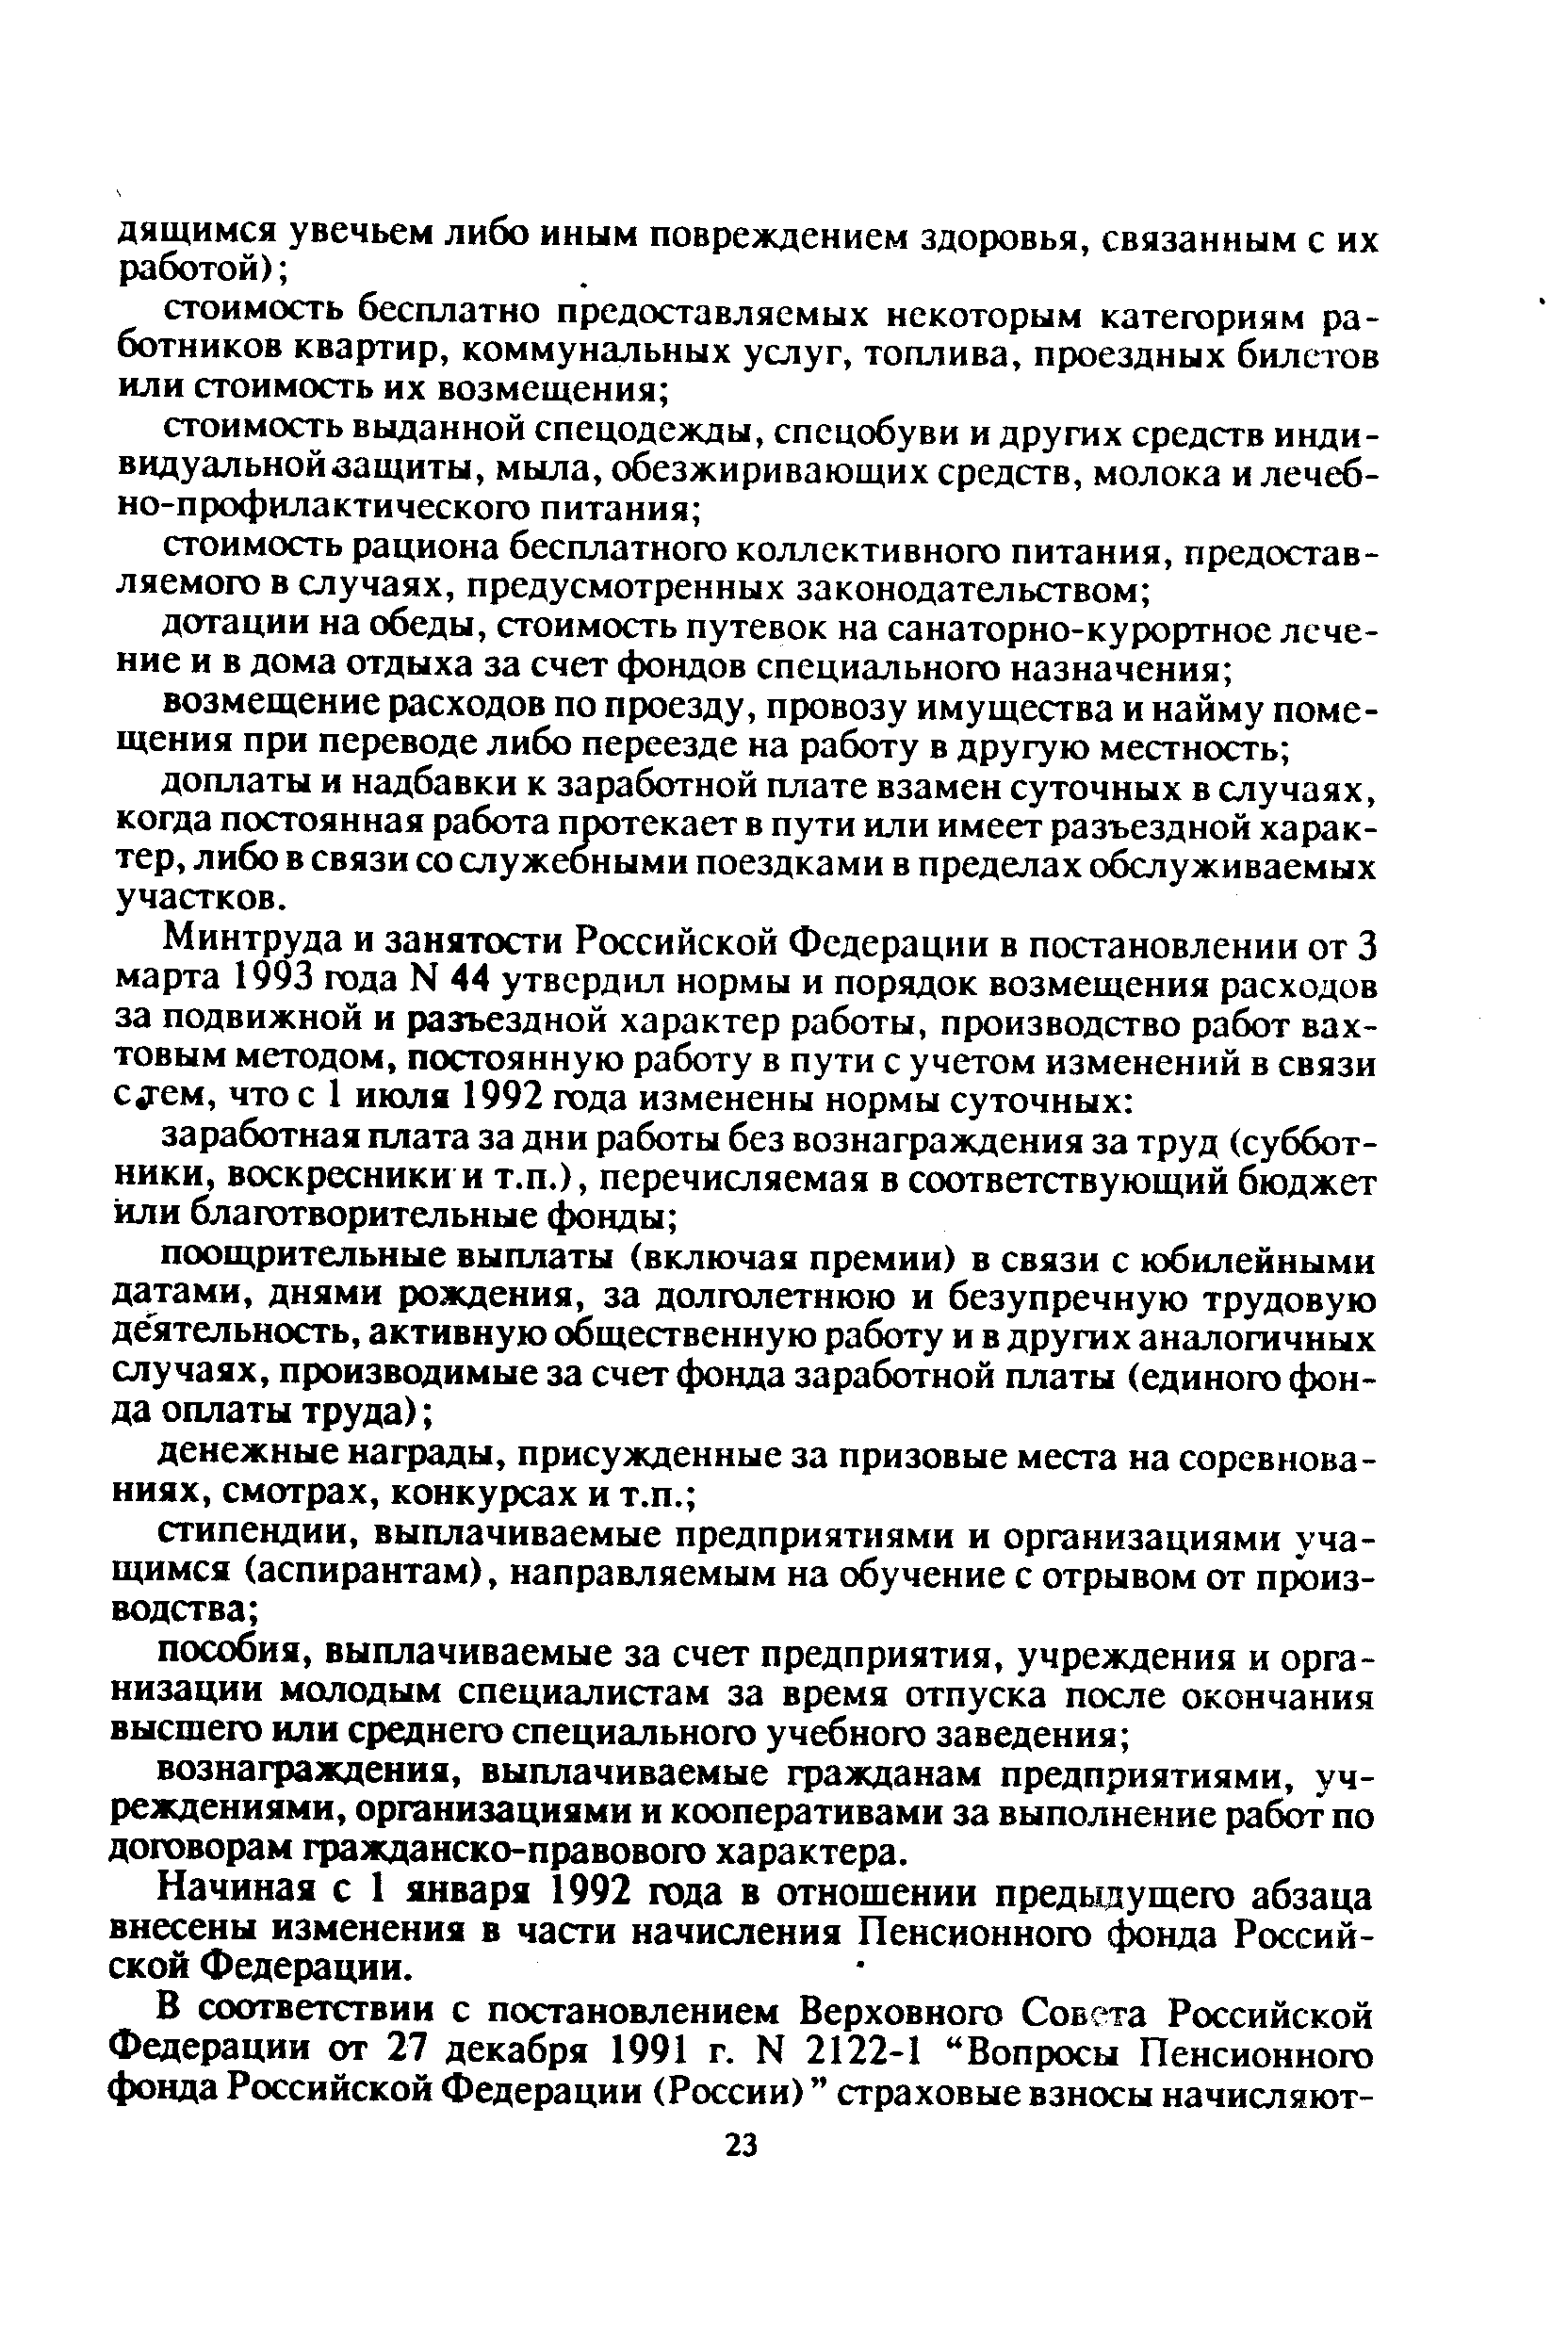 Начиная с 1 января 1992 года в отношении предыдущего абзаца внесены изменения в части начисления Пенсионного фонда Российской Федерации.
